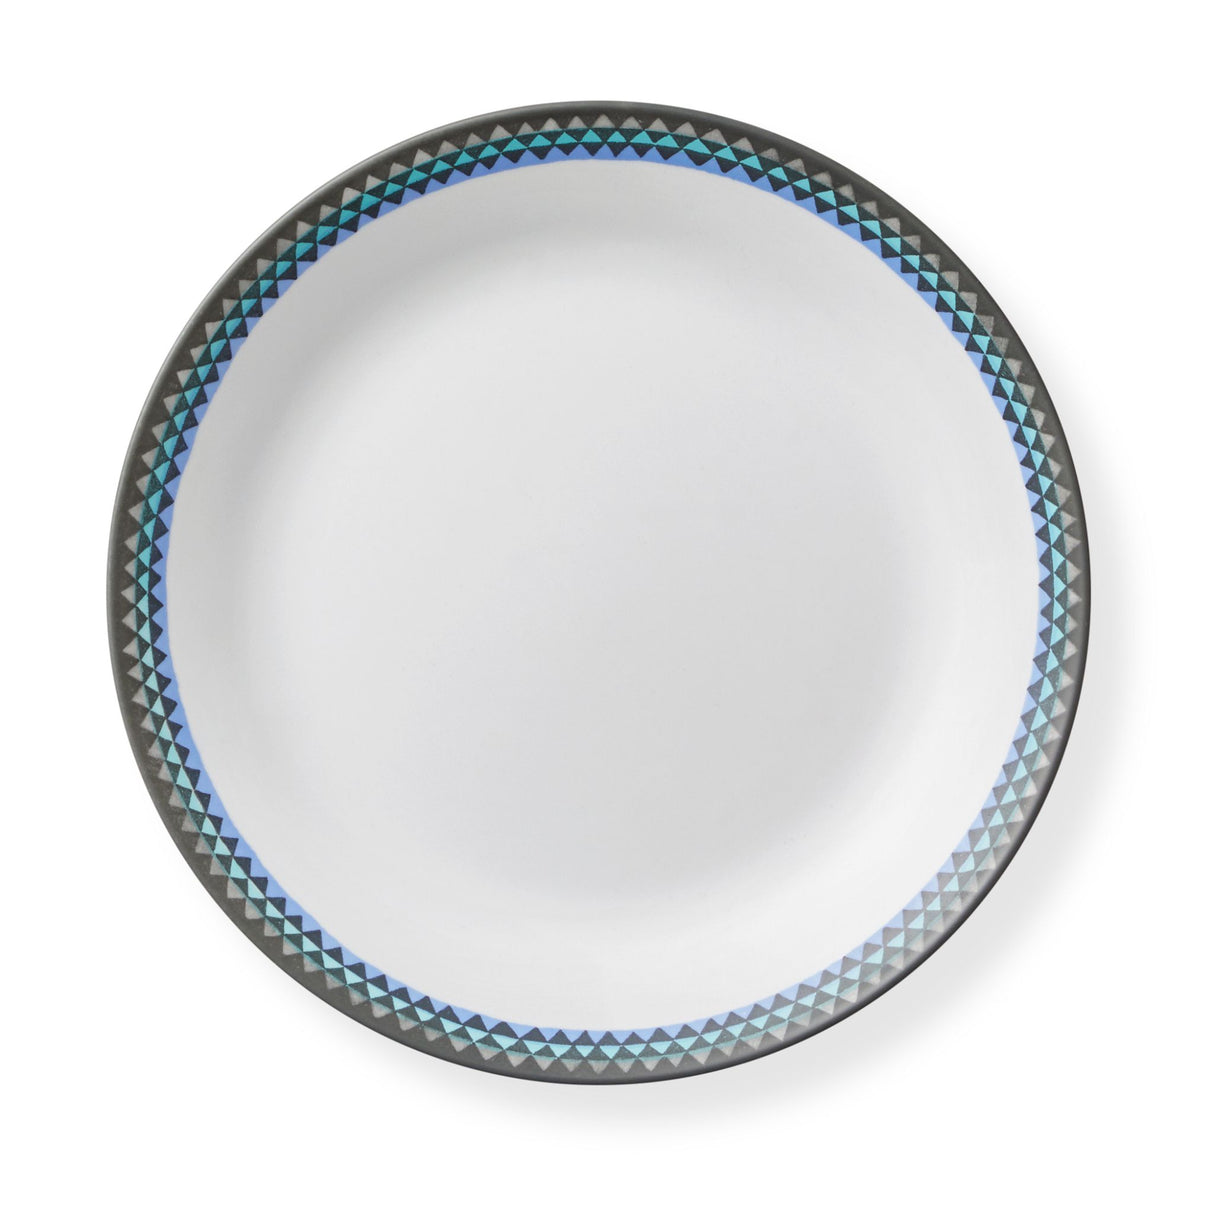 Veranda 10.25” Dinner Plate